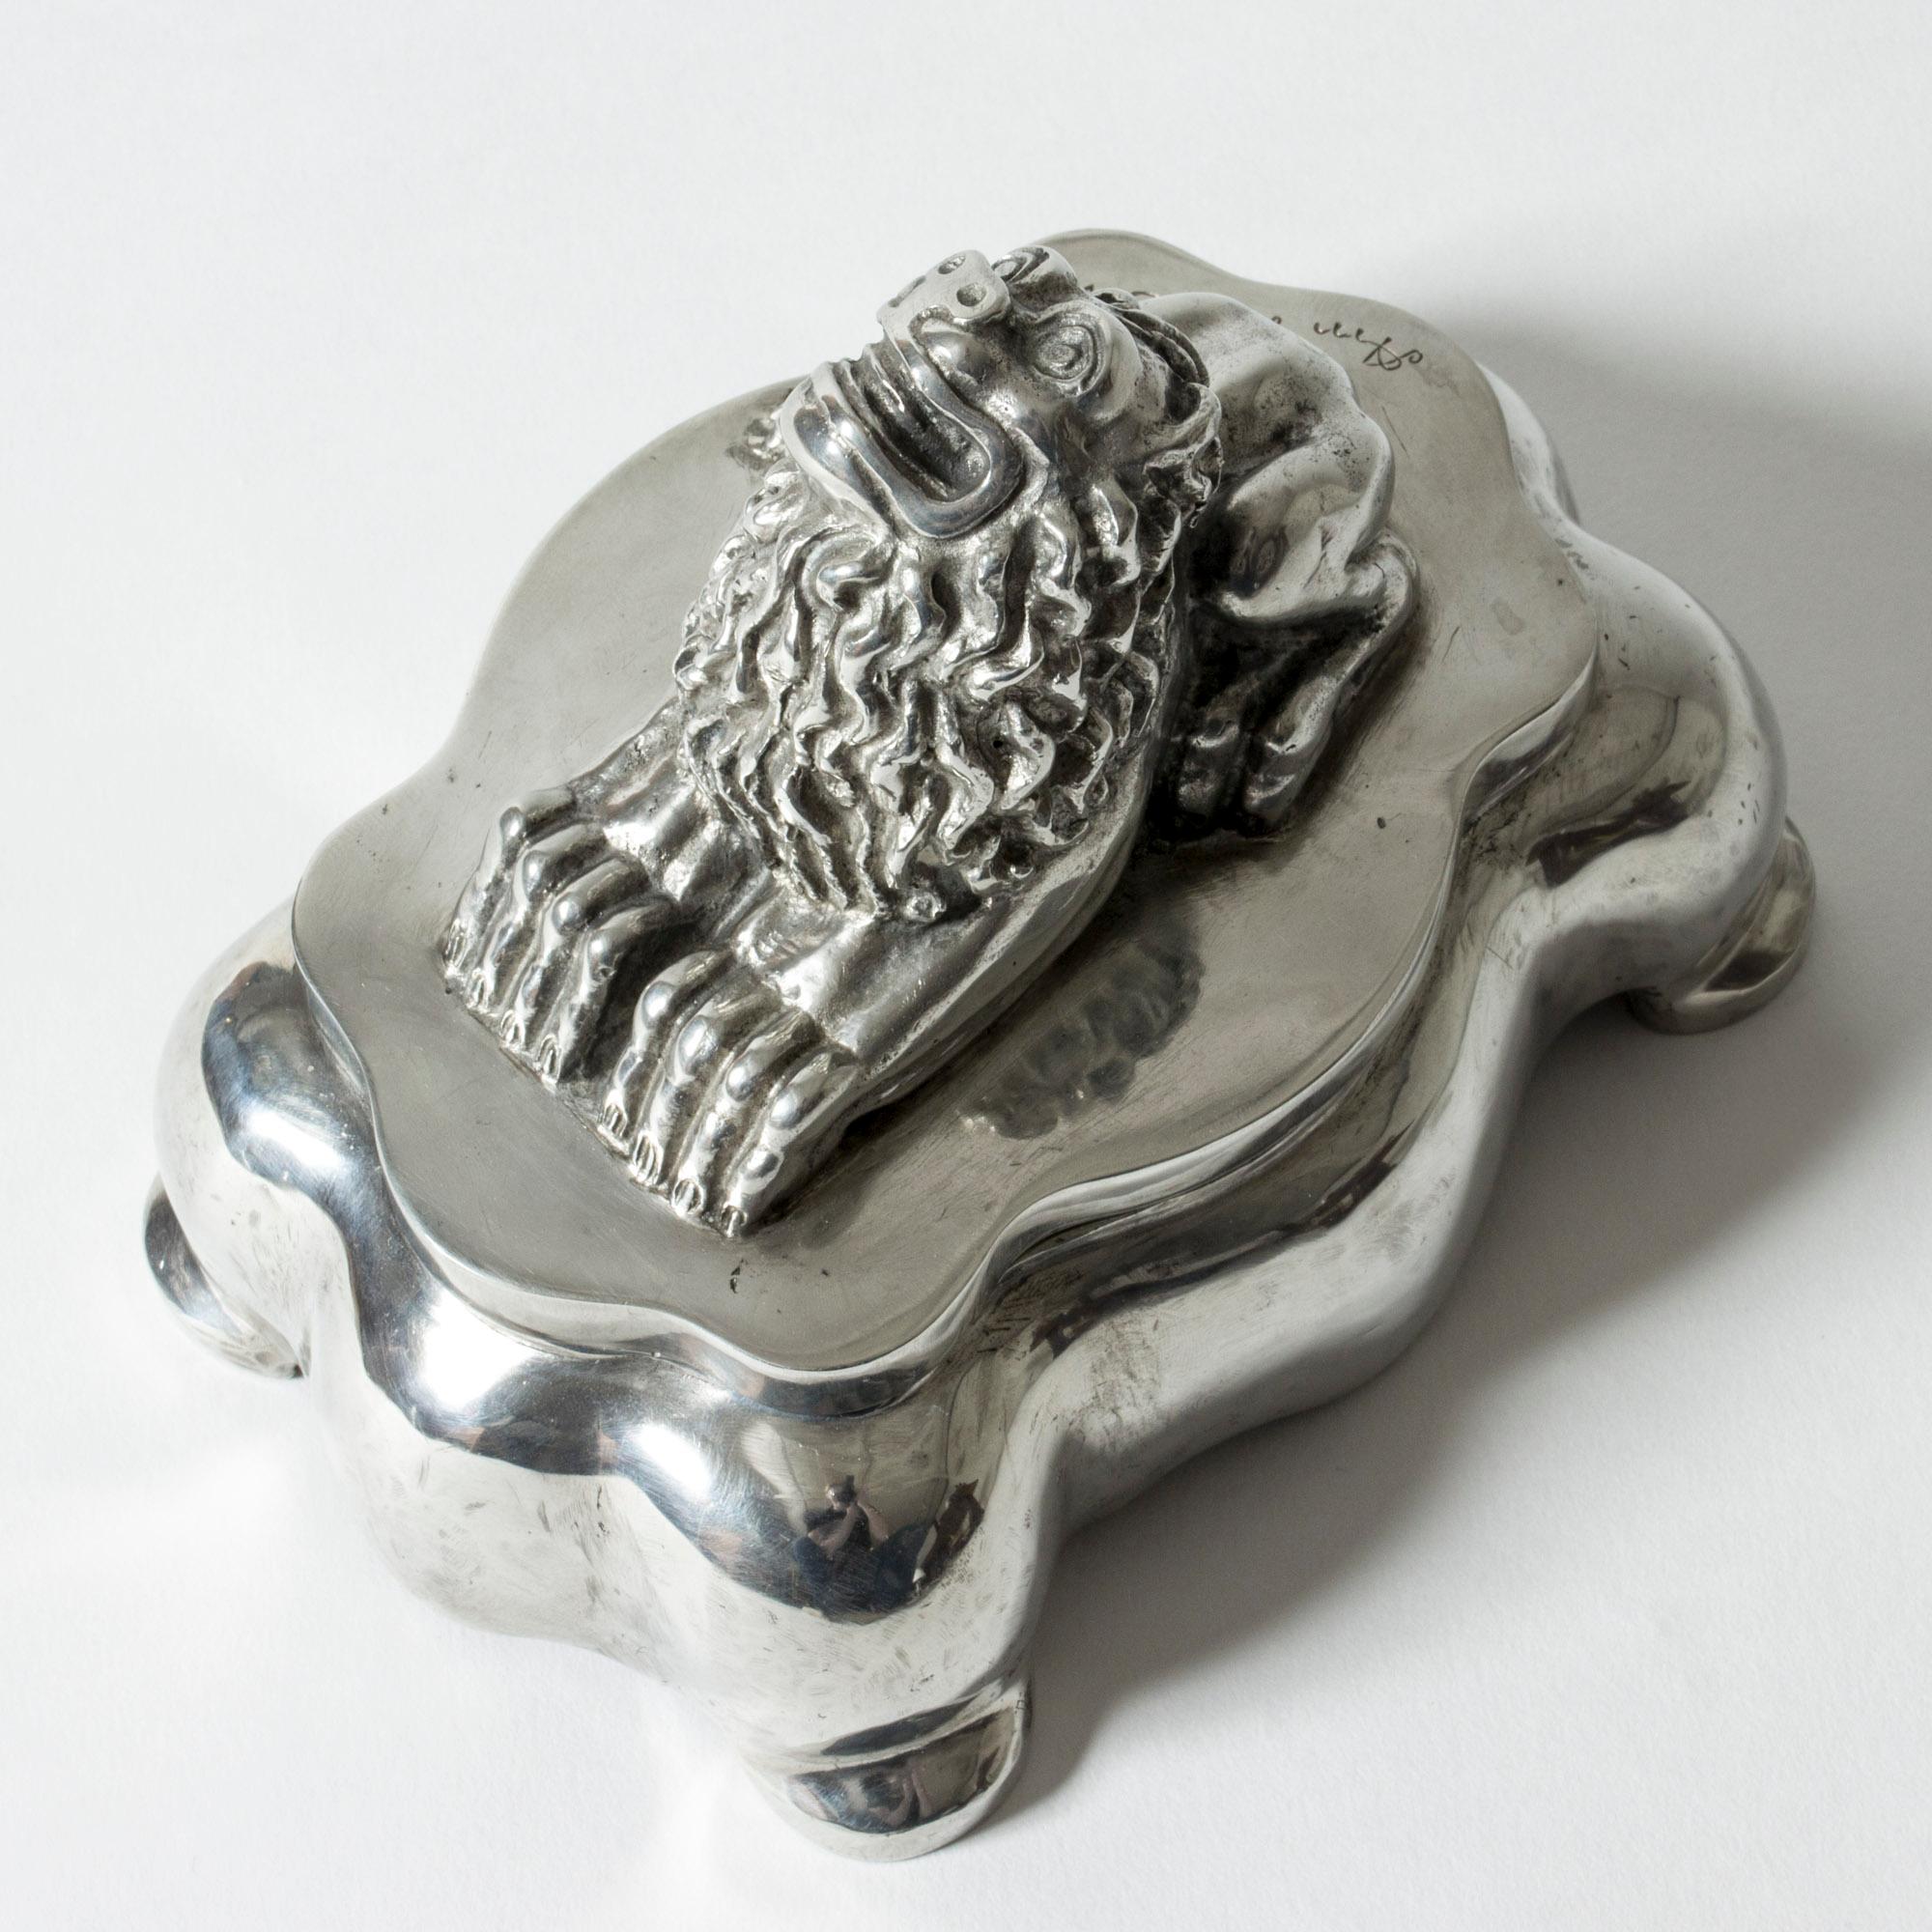 Scandinavian Modern Sculptural Lion Pewter Inkwell Box by Anna Petrus for Herman Bergman, Sweden